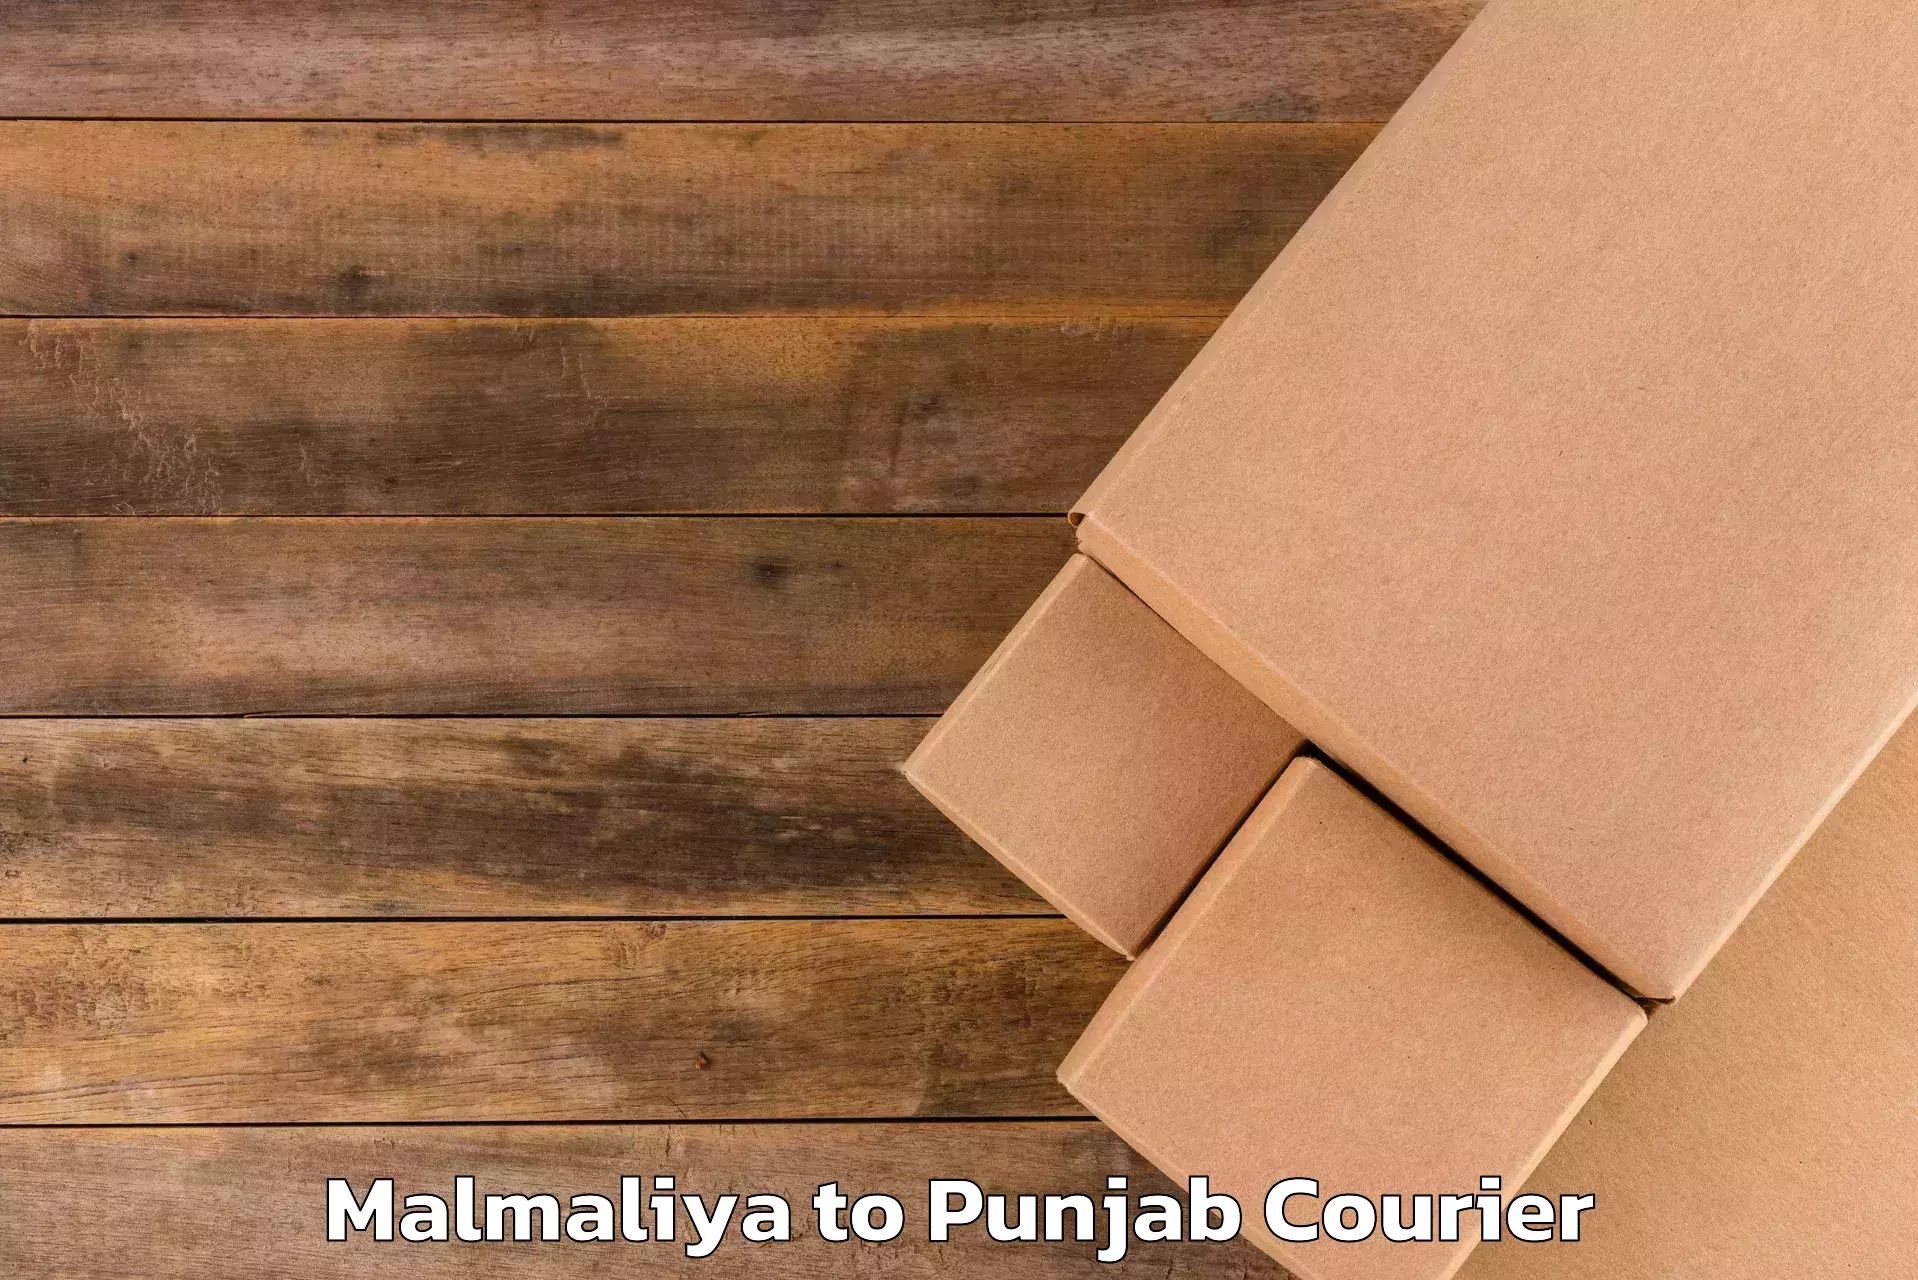 Luggage delivery news Malmaliya to Anandpur Sahib